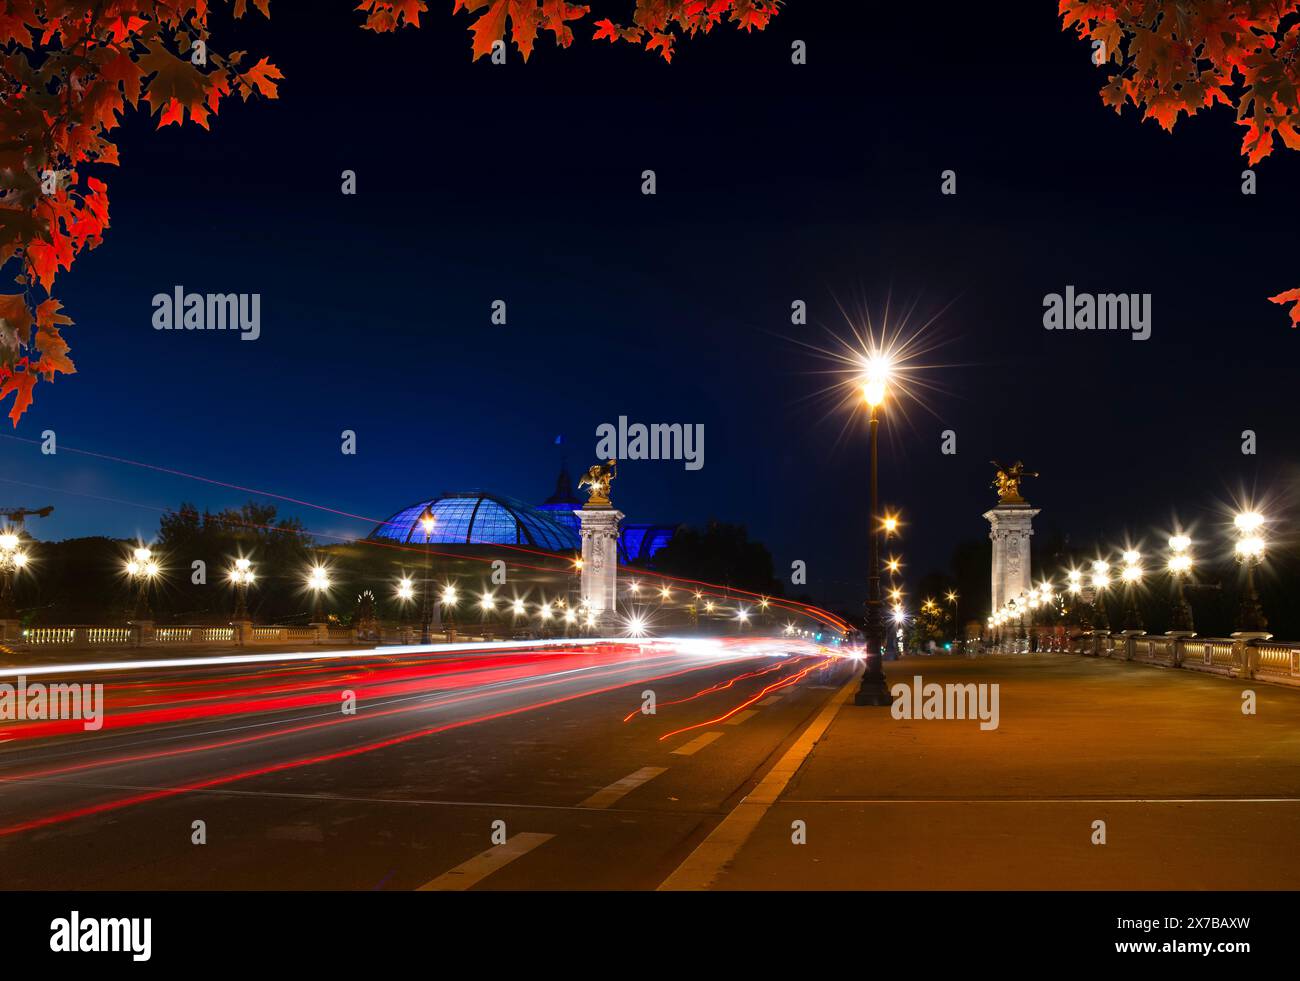 Alexandrovsky Bridge with night lighting in Paris Stock Photo